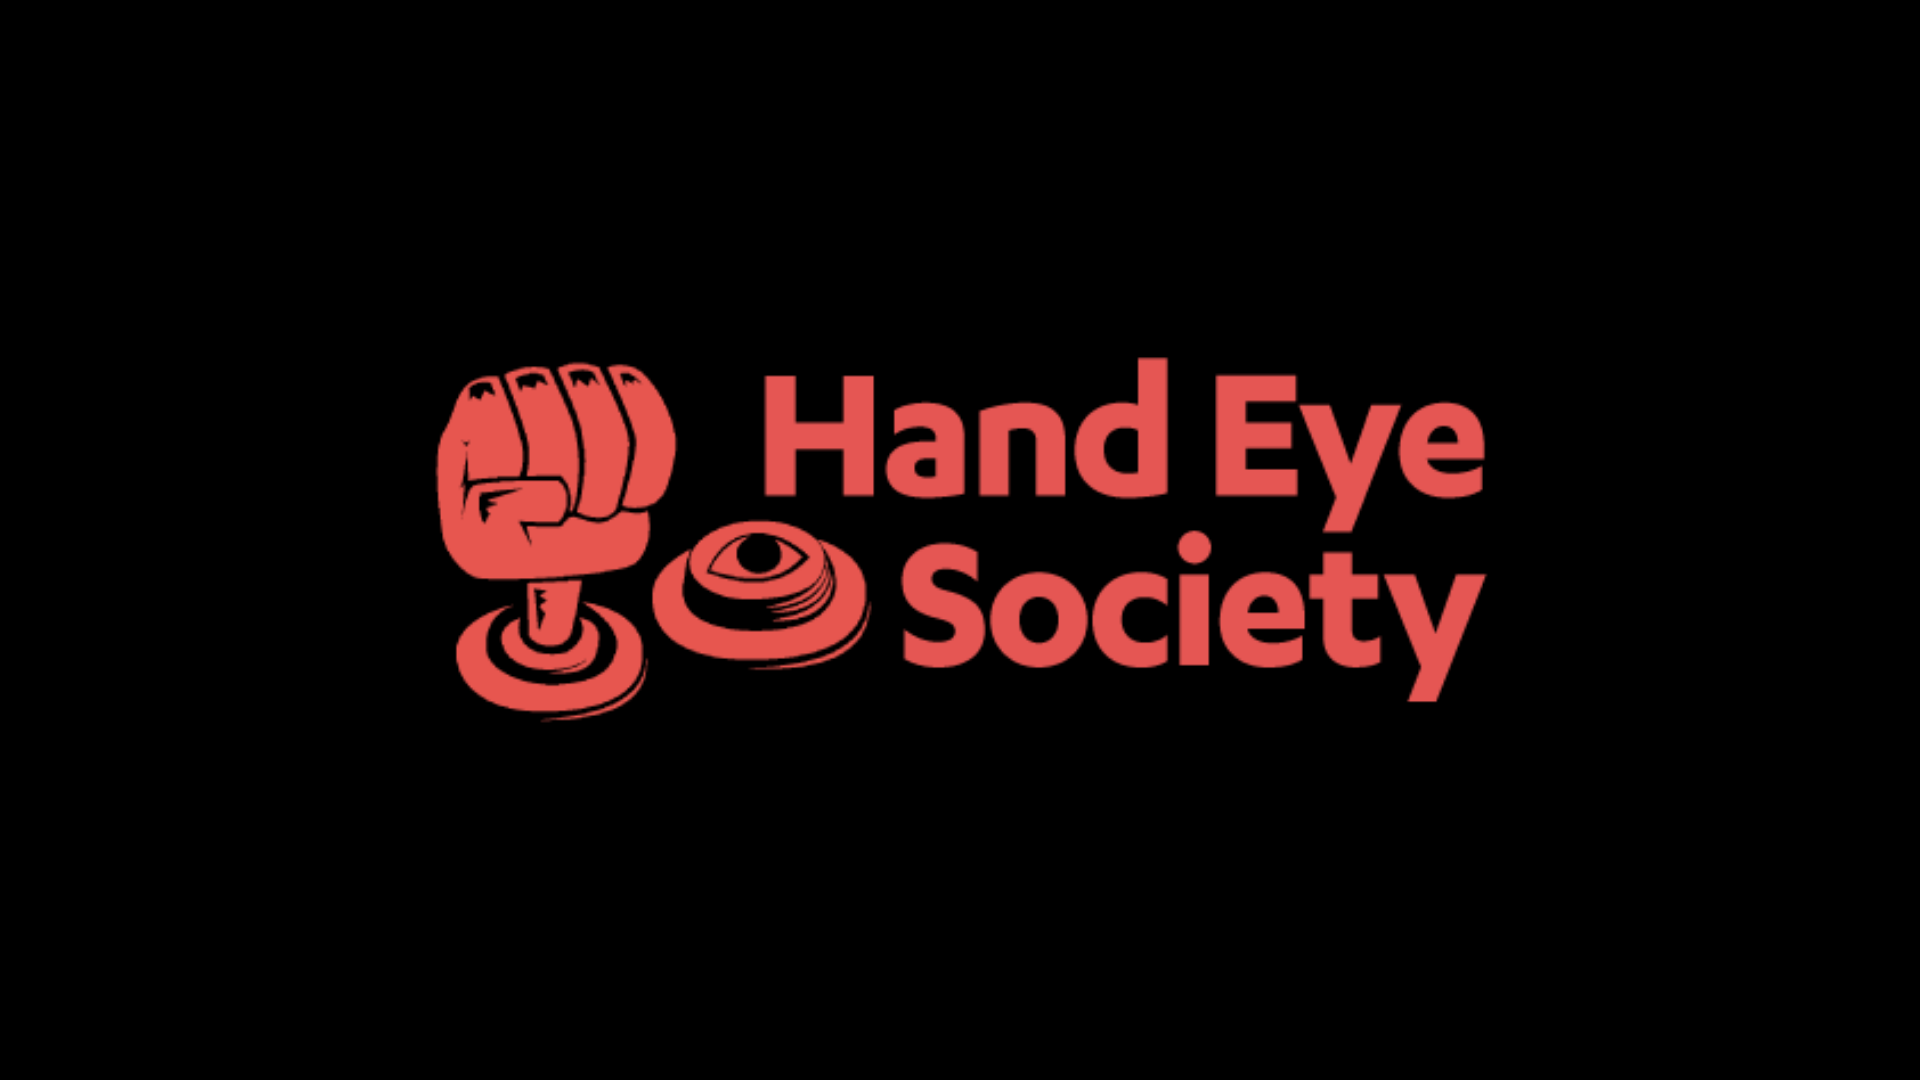 Hand Eye Society